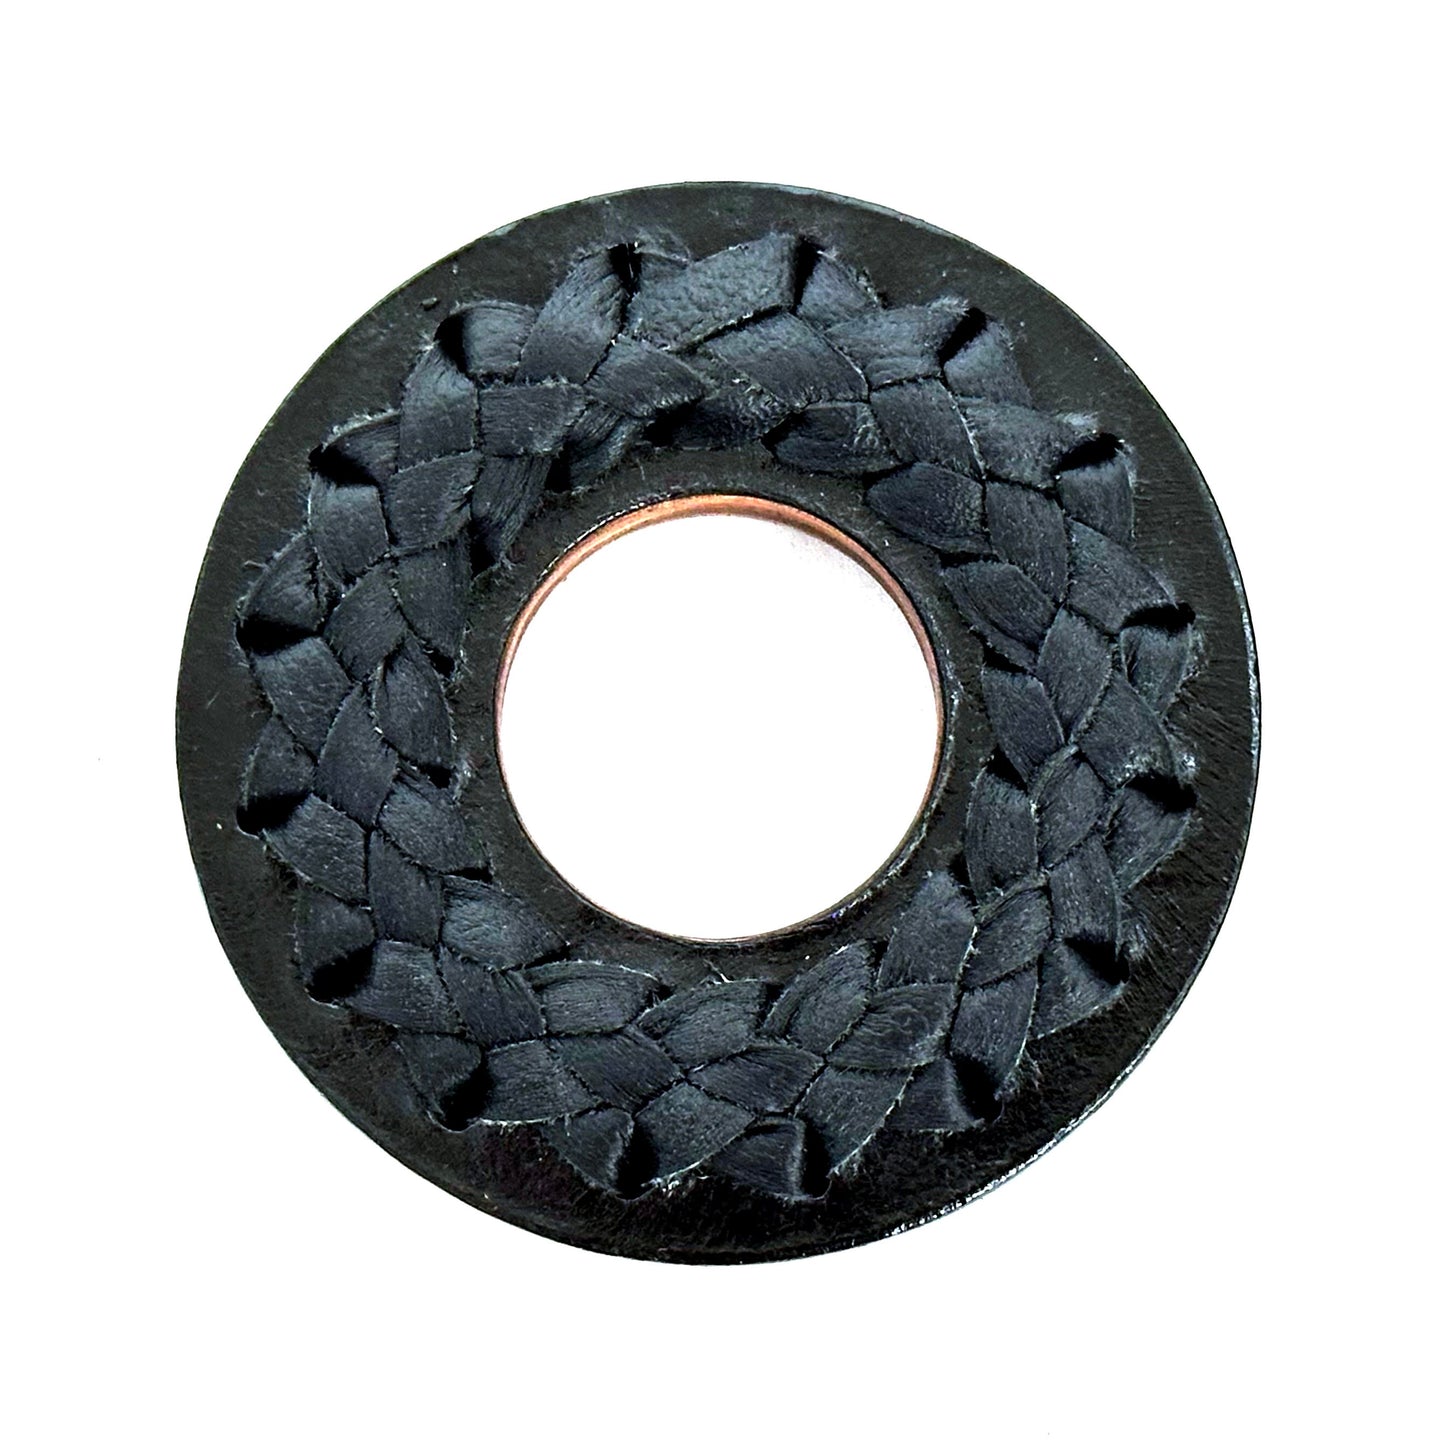 RARE: Made-in-Colombia Leather Tsuba (Black Toji)